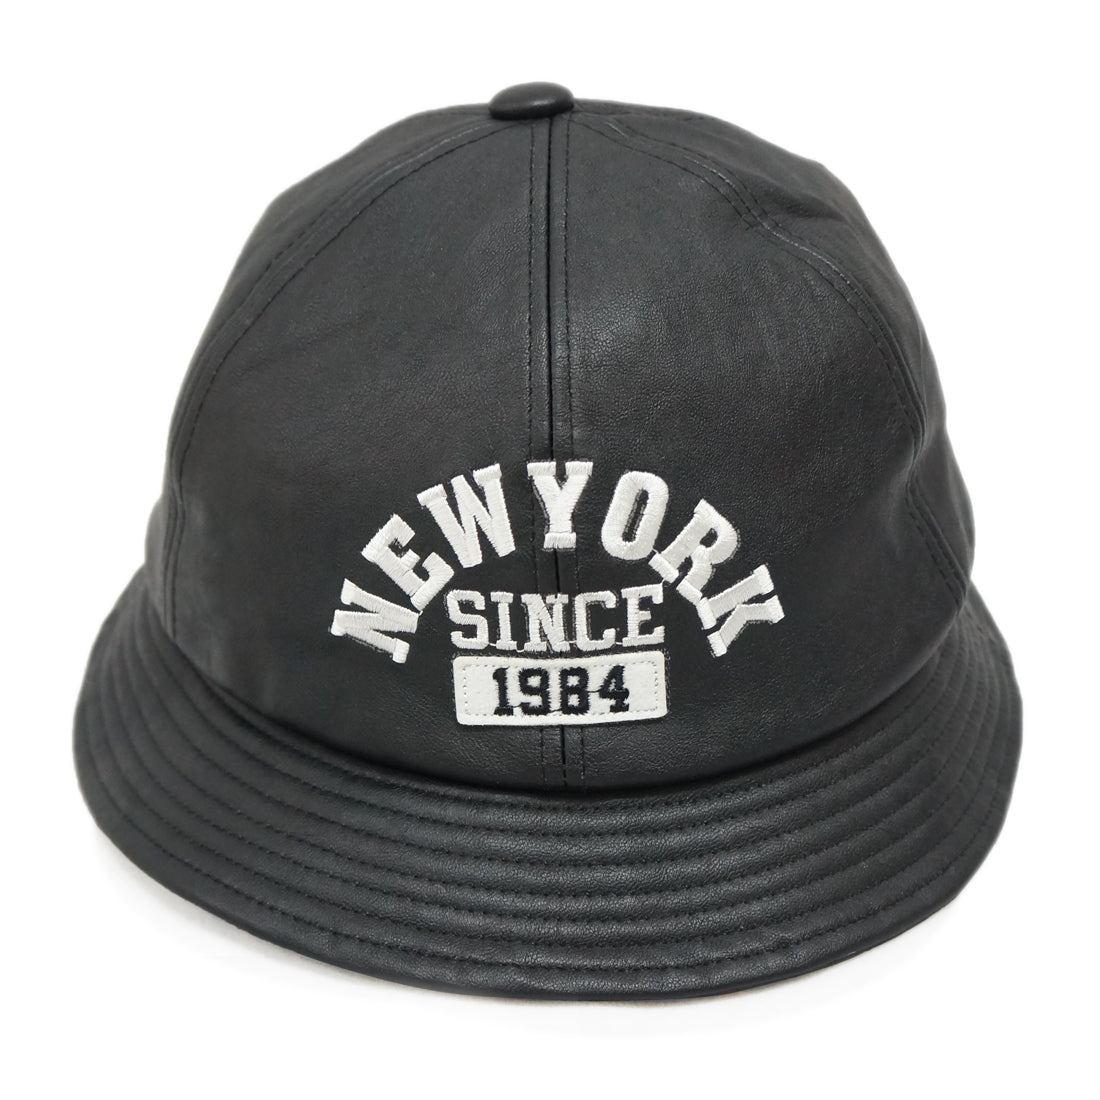 帽子 ハット ボールハット メトロハット フェイクレザー 合成皮革 NEWYORK ロゴ キーズ Keys